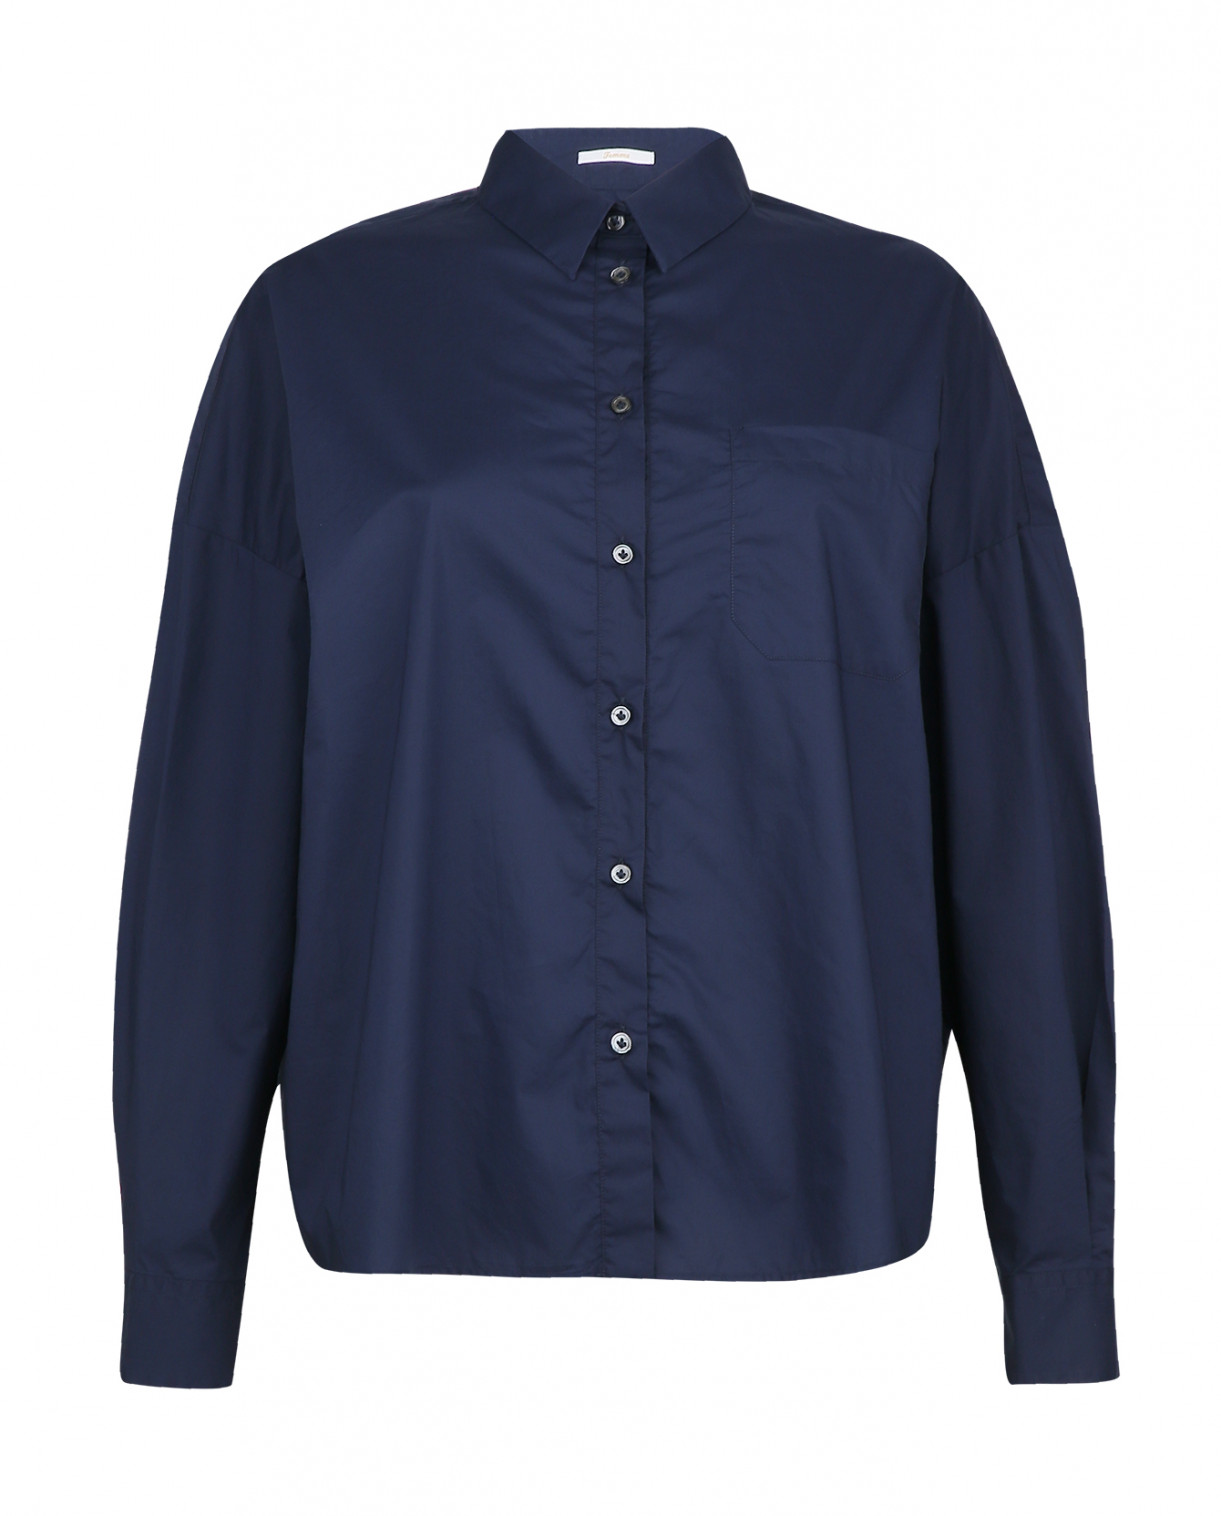 Классическая рубашка из хлопка с рукавами-летучая мышь Robert Friedman  –  Общий вид  – Цвет:  Синий